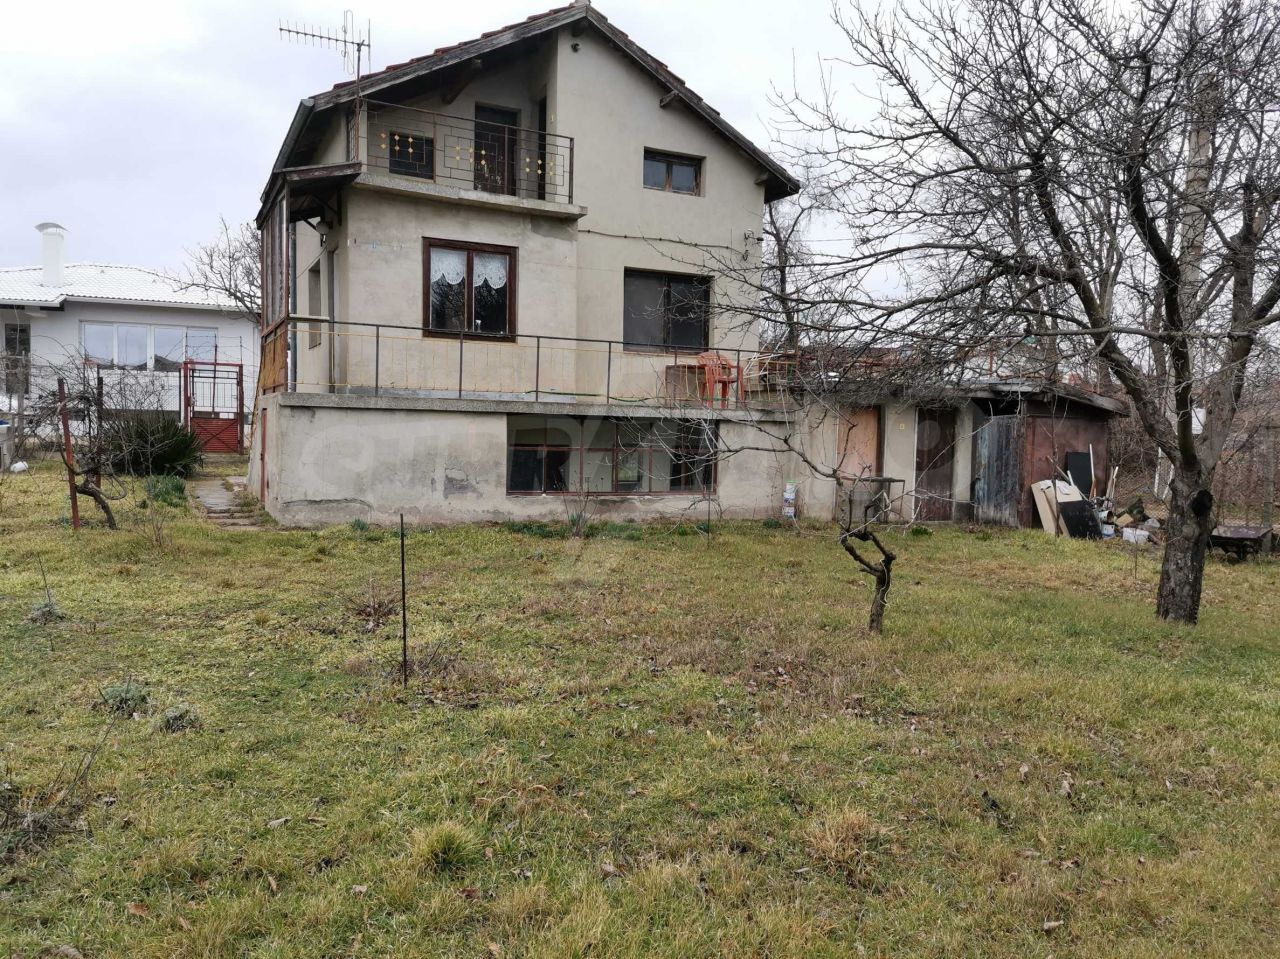 House in Alen mak, Bulgaria, 32 sq.m - picture 1